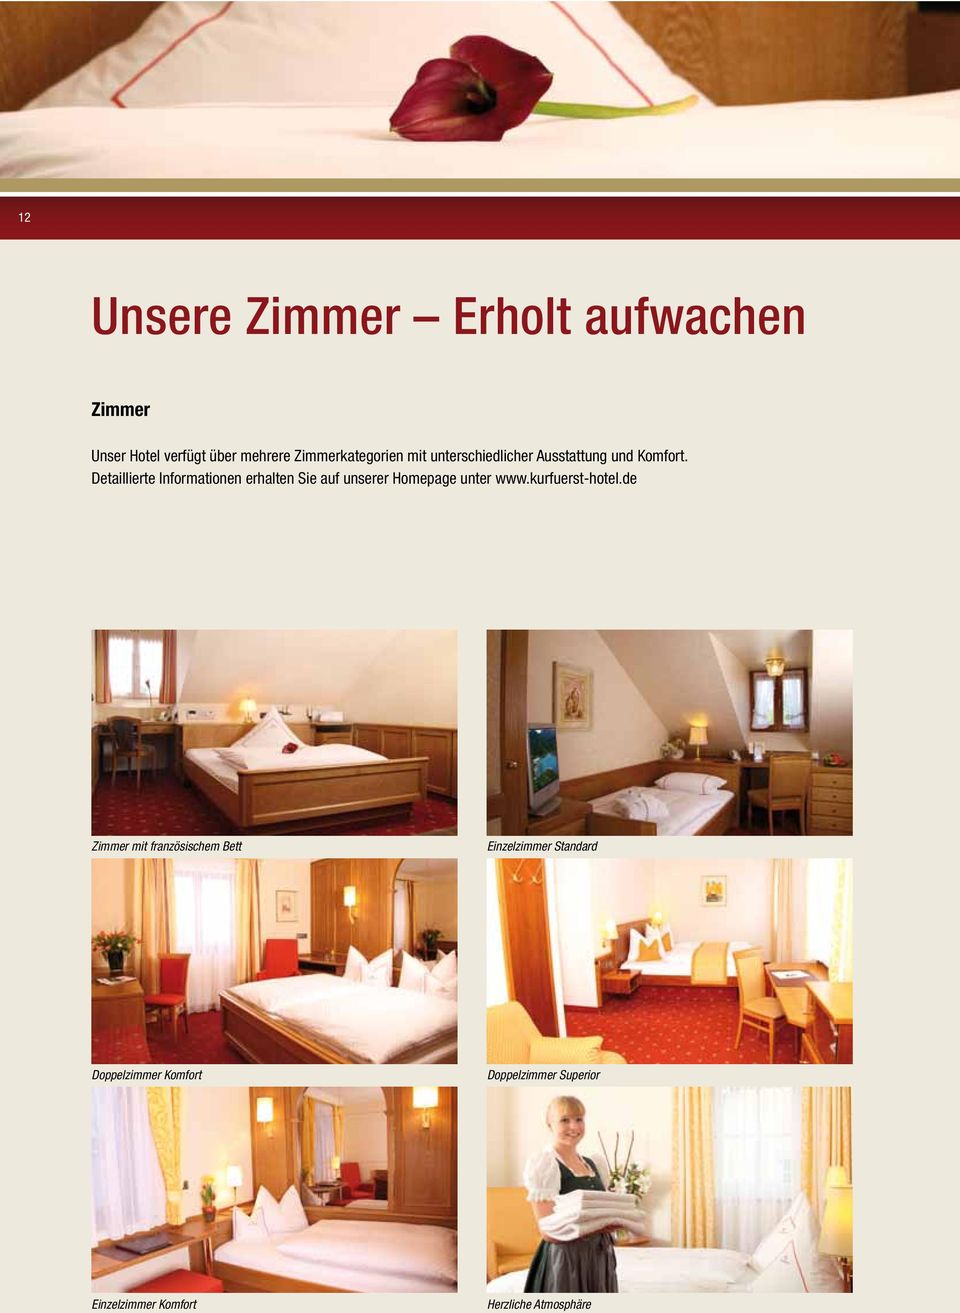 Detaillierte Informationen erhalten Sie auf unserer Homepage unter www.kurfuerst-hotel.